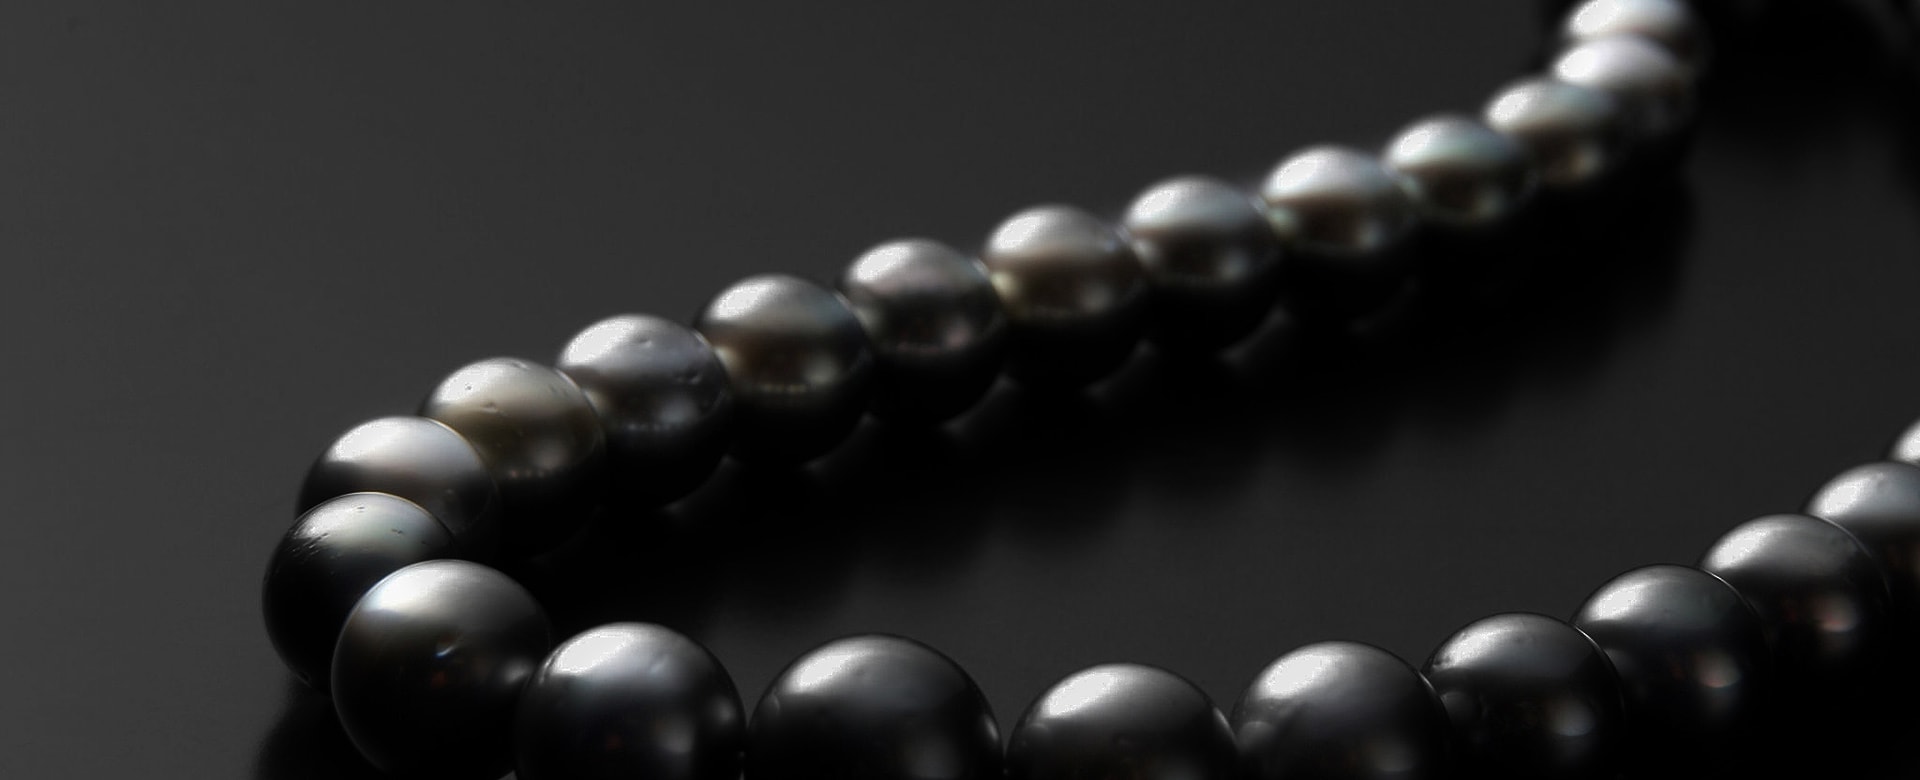 23 Black Gemstones For Jewelry 1